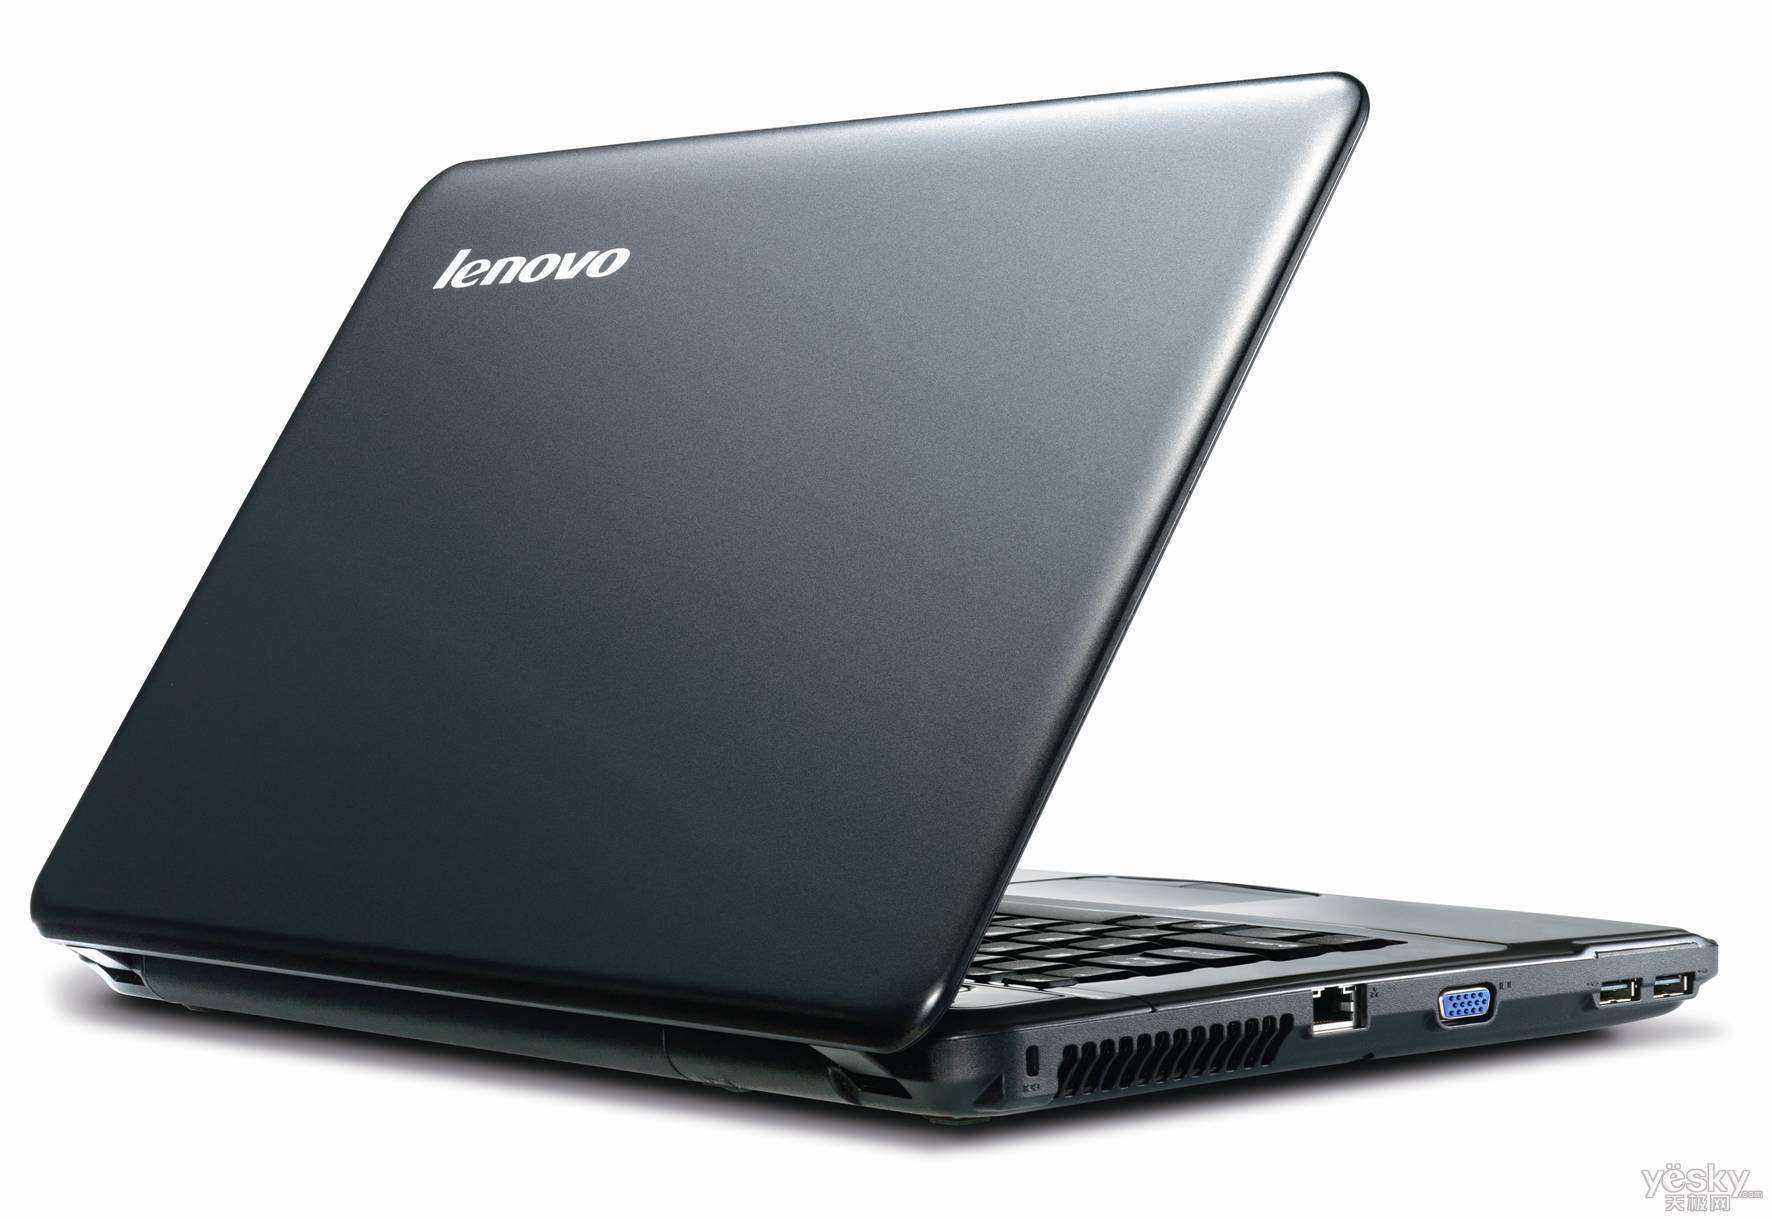 ПК-Моноблок Lenovo IdeaCentre C455 (57-324672) купить | ELMIR - цена, отзывы, характеристики